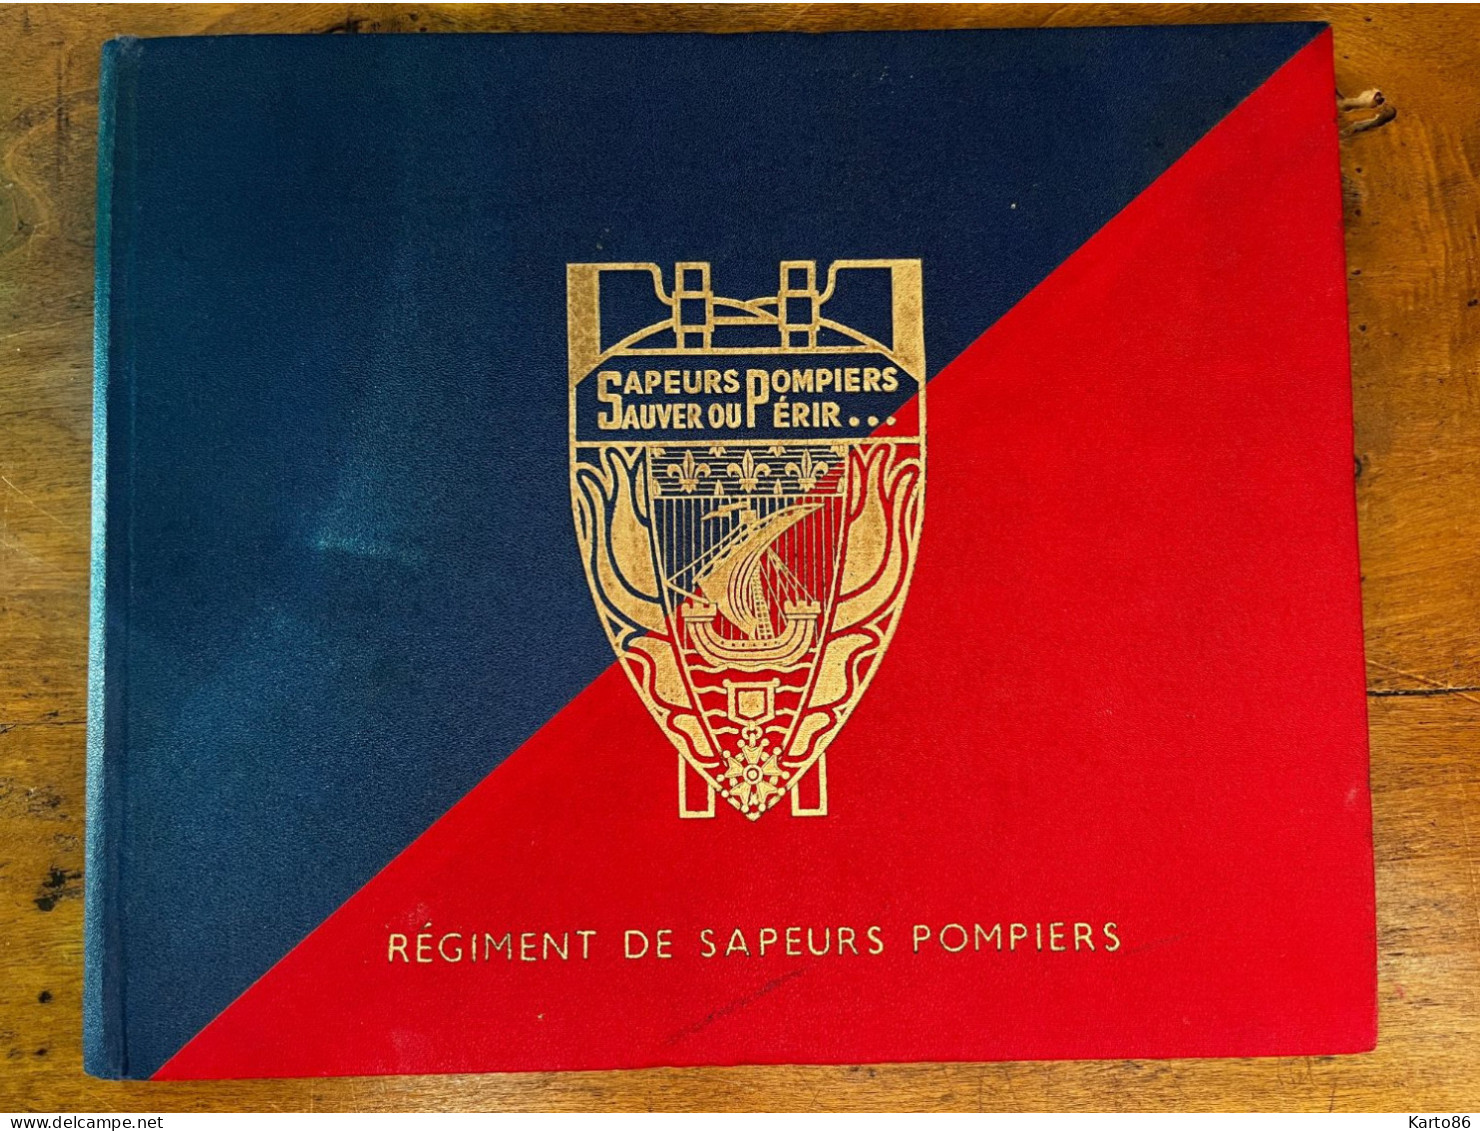 Régiment De Sapeurs Pompiers * Paris 1952 * Album 18 Pages De Photos * Sapeur Pompier Fireman * Studio Damrémont - Firemen